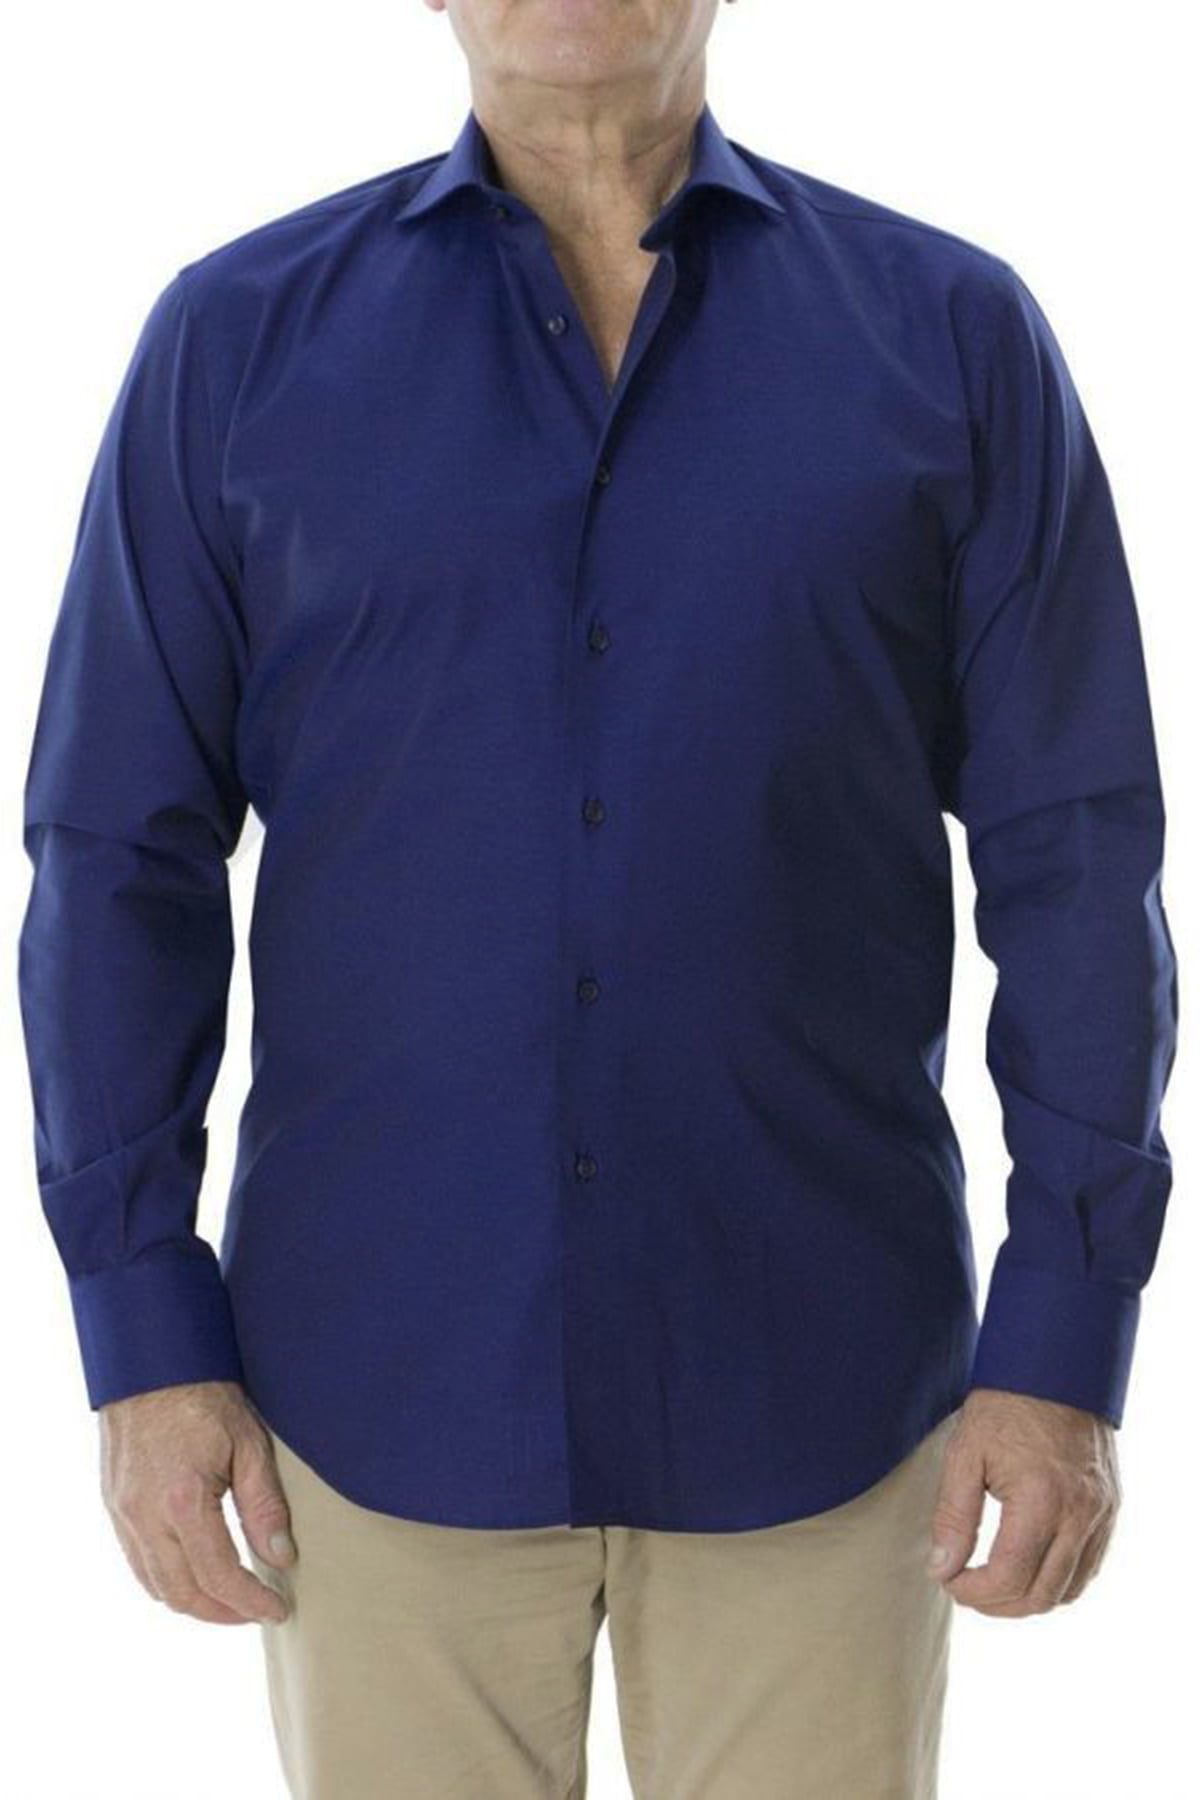 Camicia uomo regular collo francese cotone fisso 100% blu